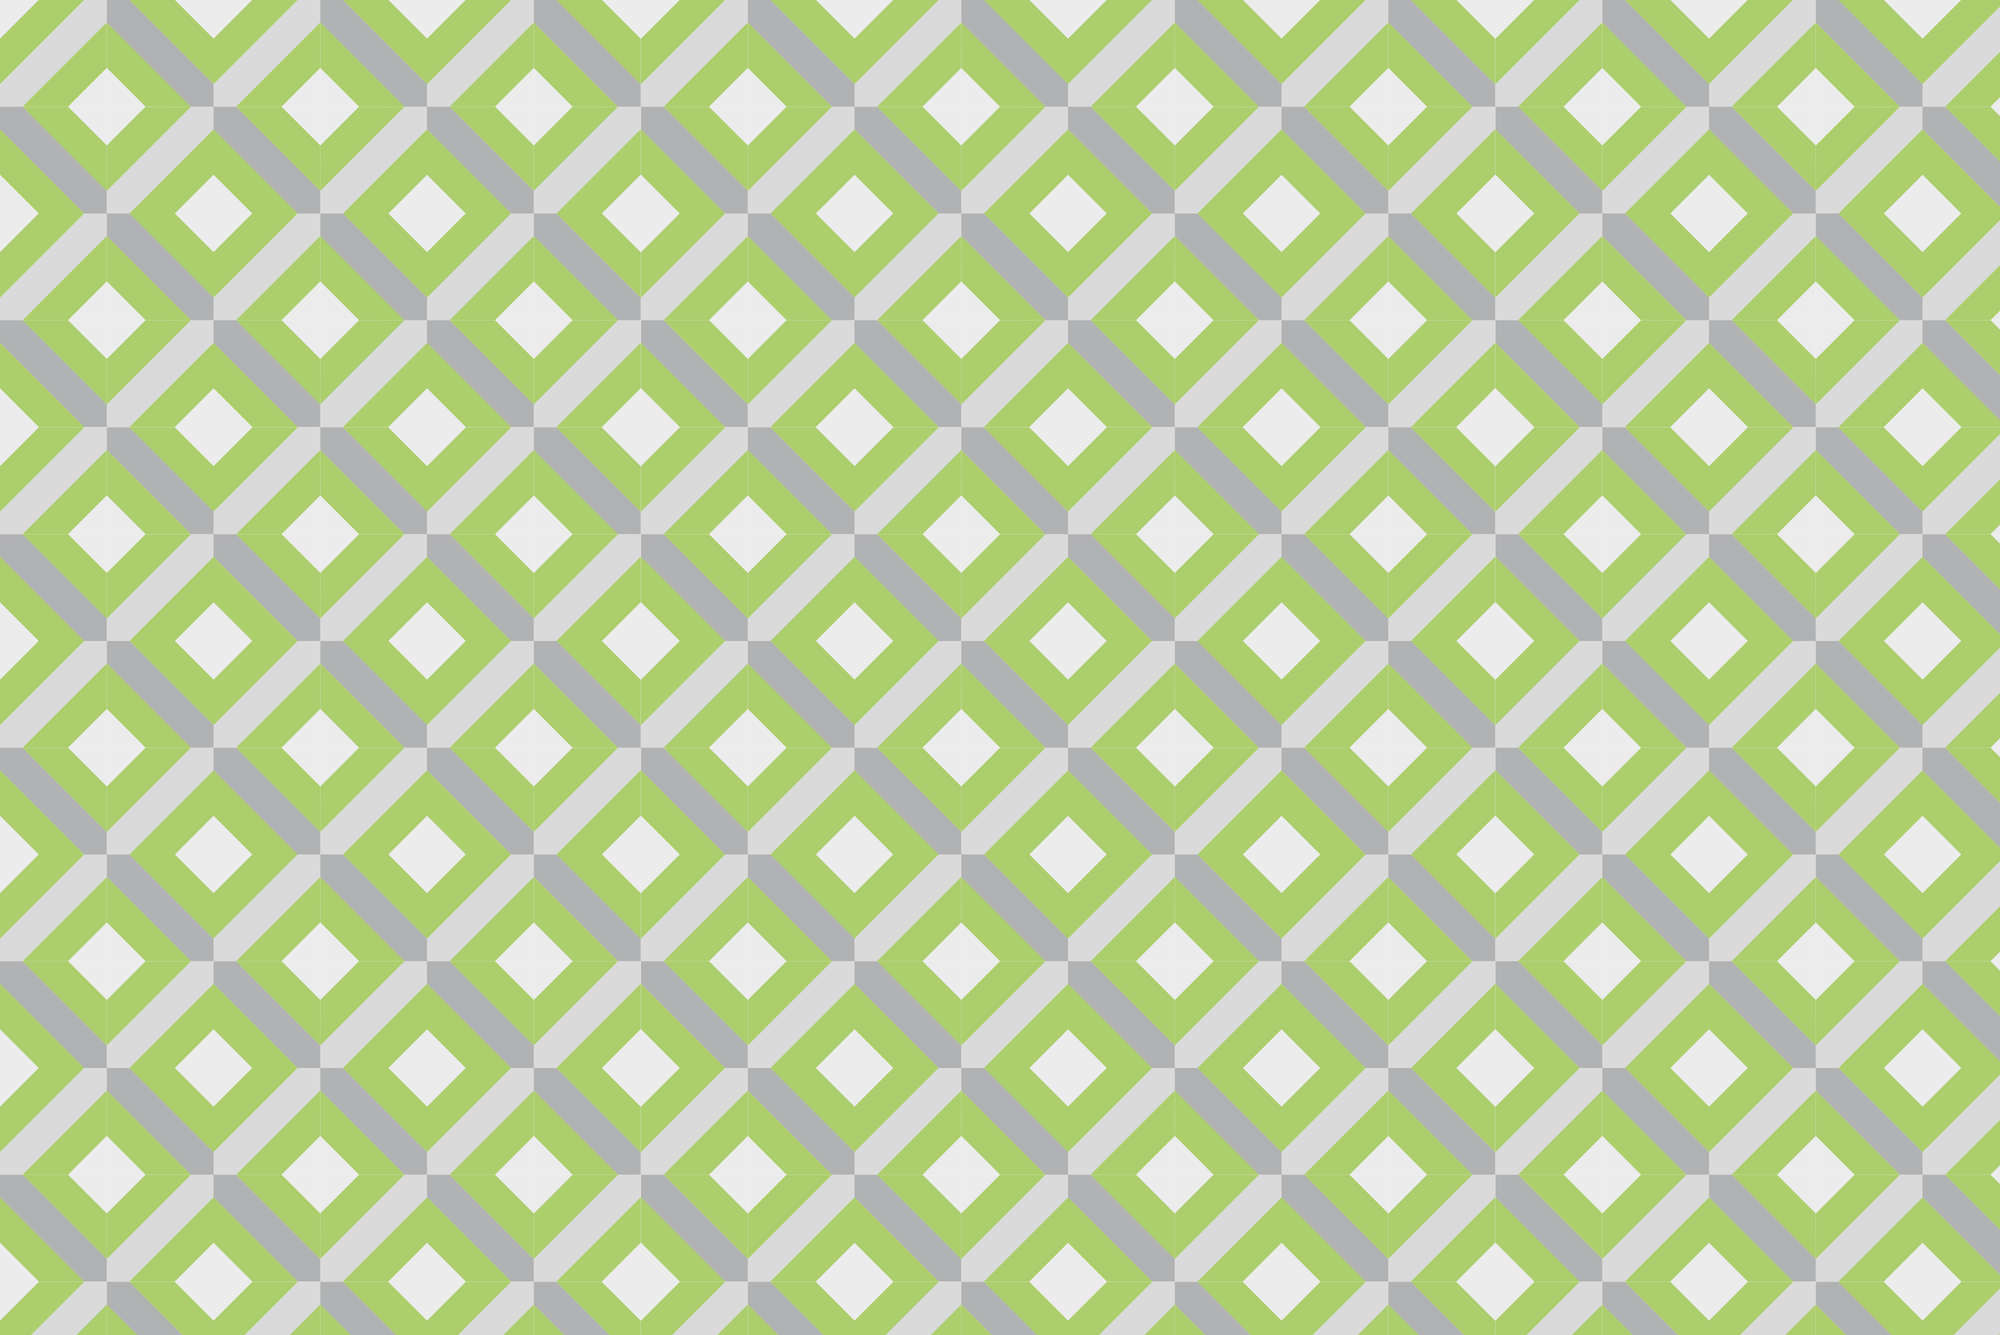             Design behang doos motief met kleine vierkantjes groen op parelmoer glad vlies
        